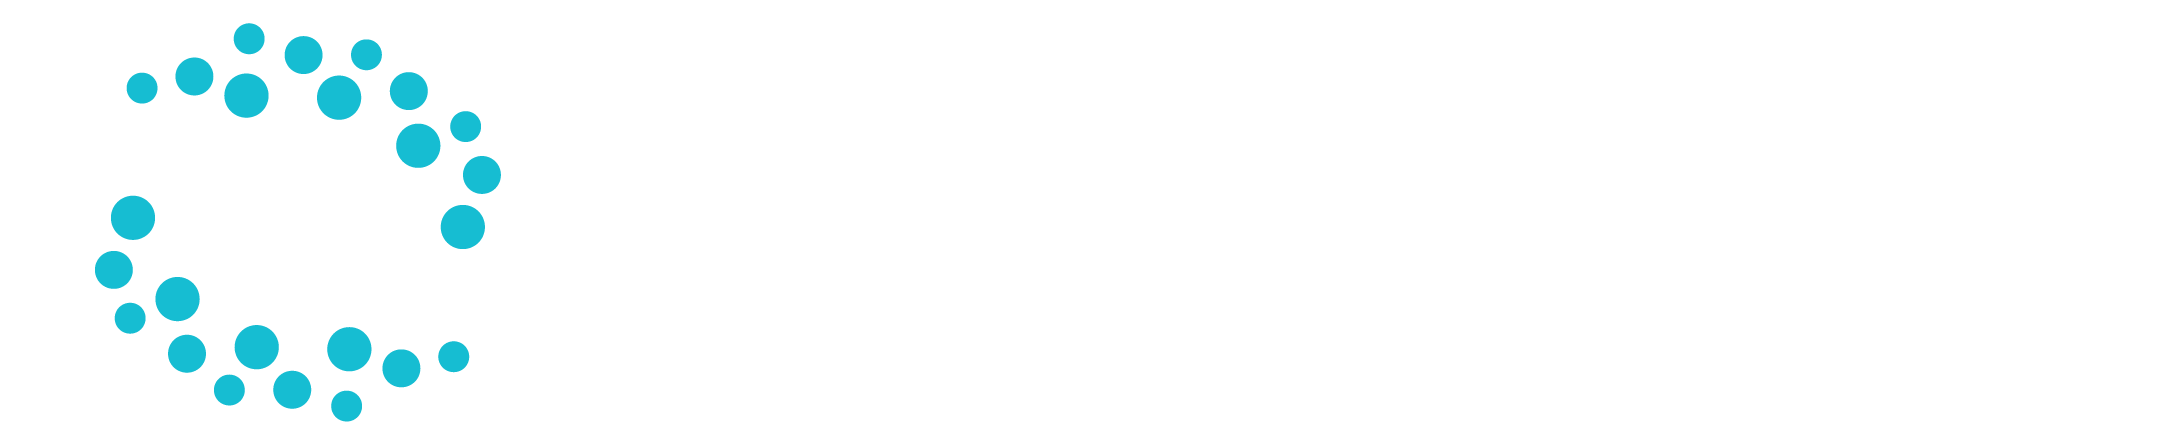 Eyegaze Tech